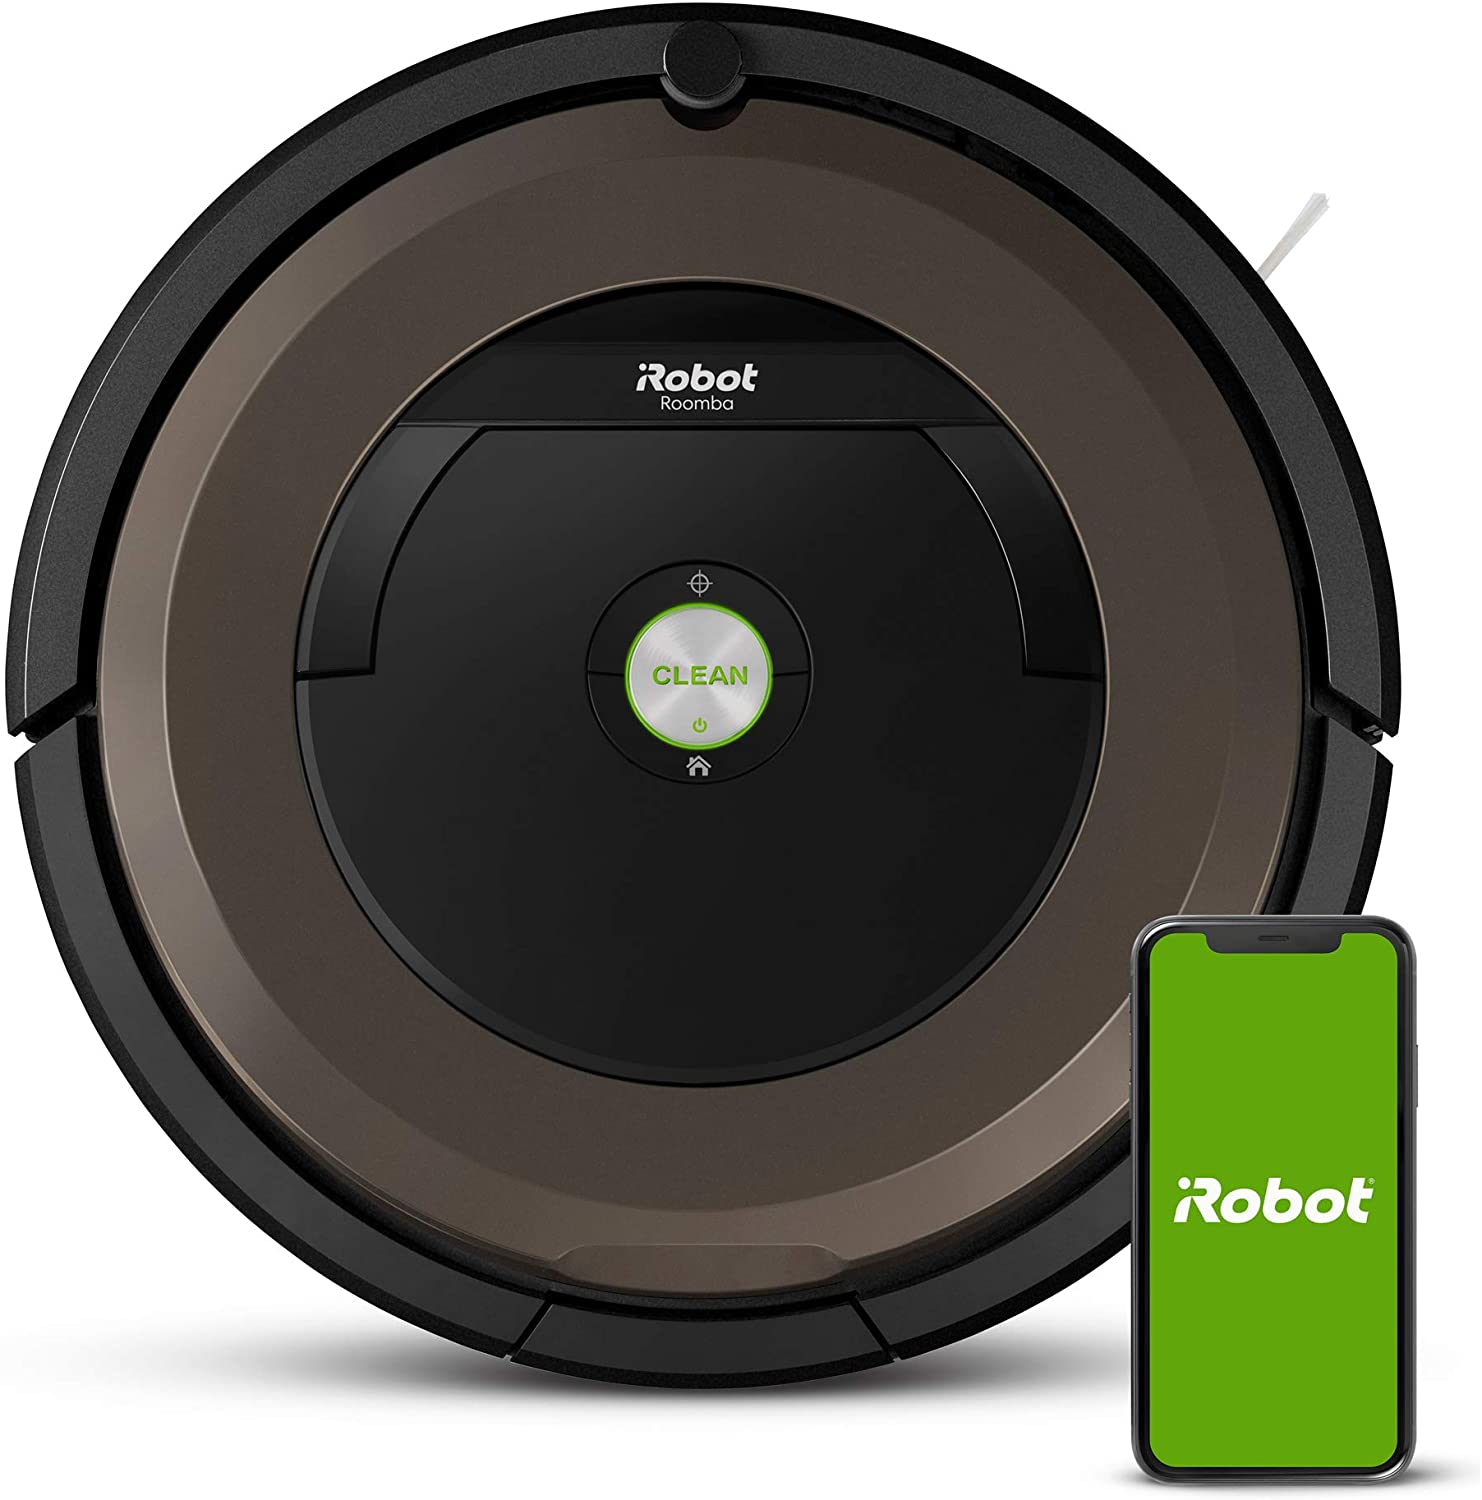 Roomba 890 vs Roomba 891